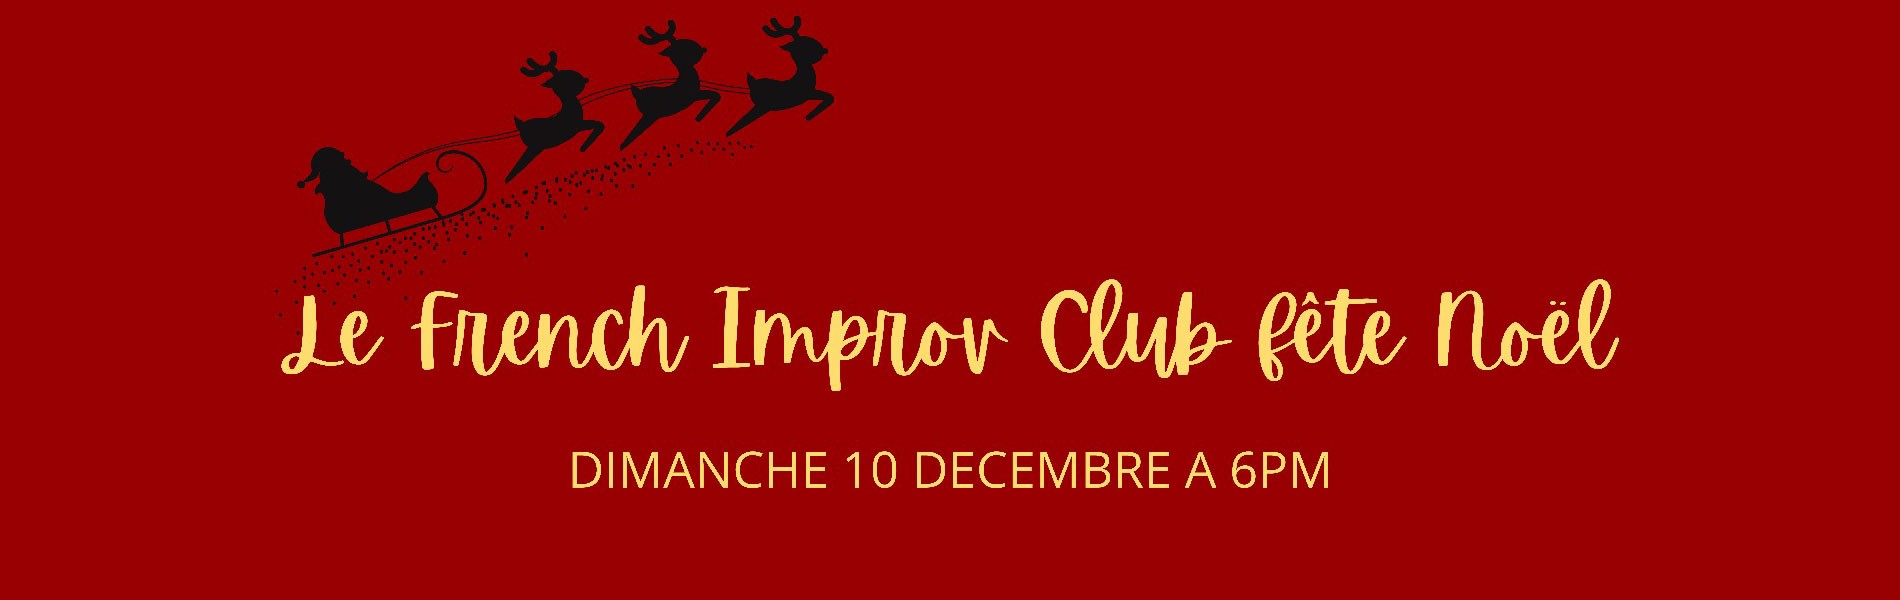 French Improv Club